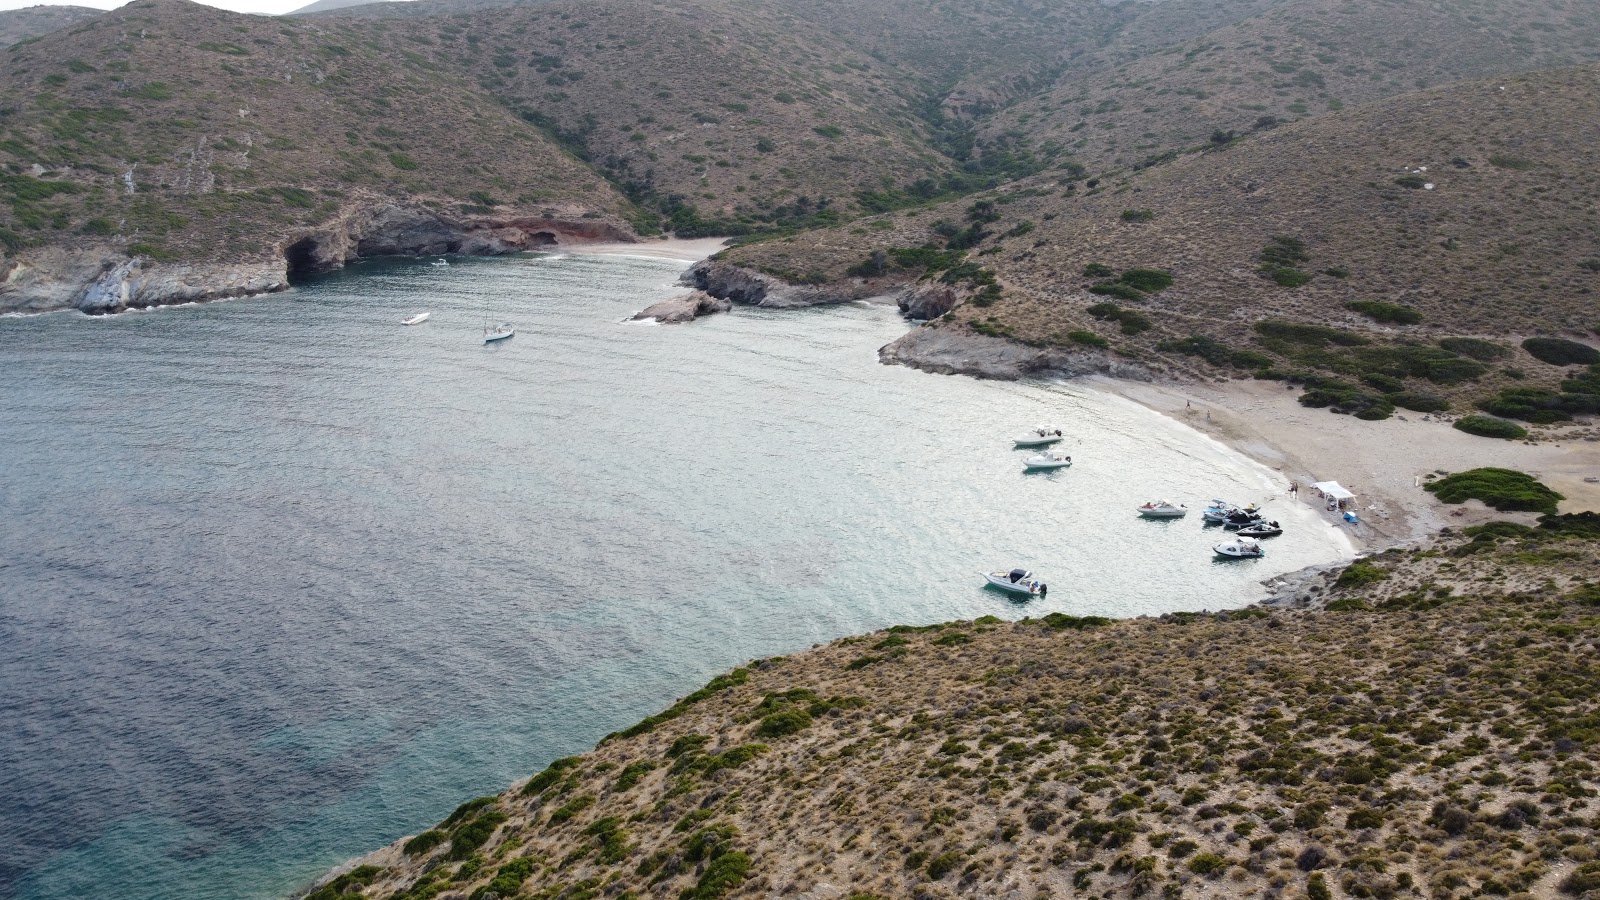 Paralia Makronissos'in fotoğrafı hafif ince çakıl taş yüzey ile